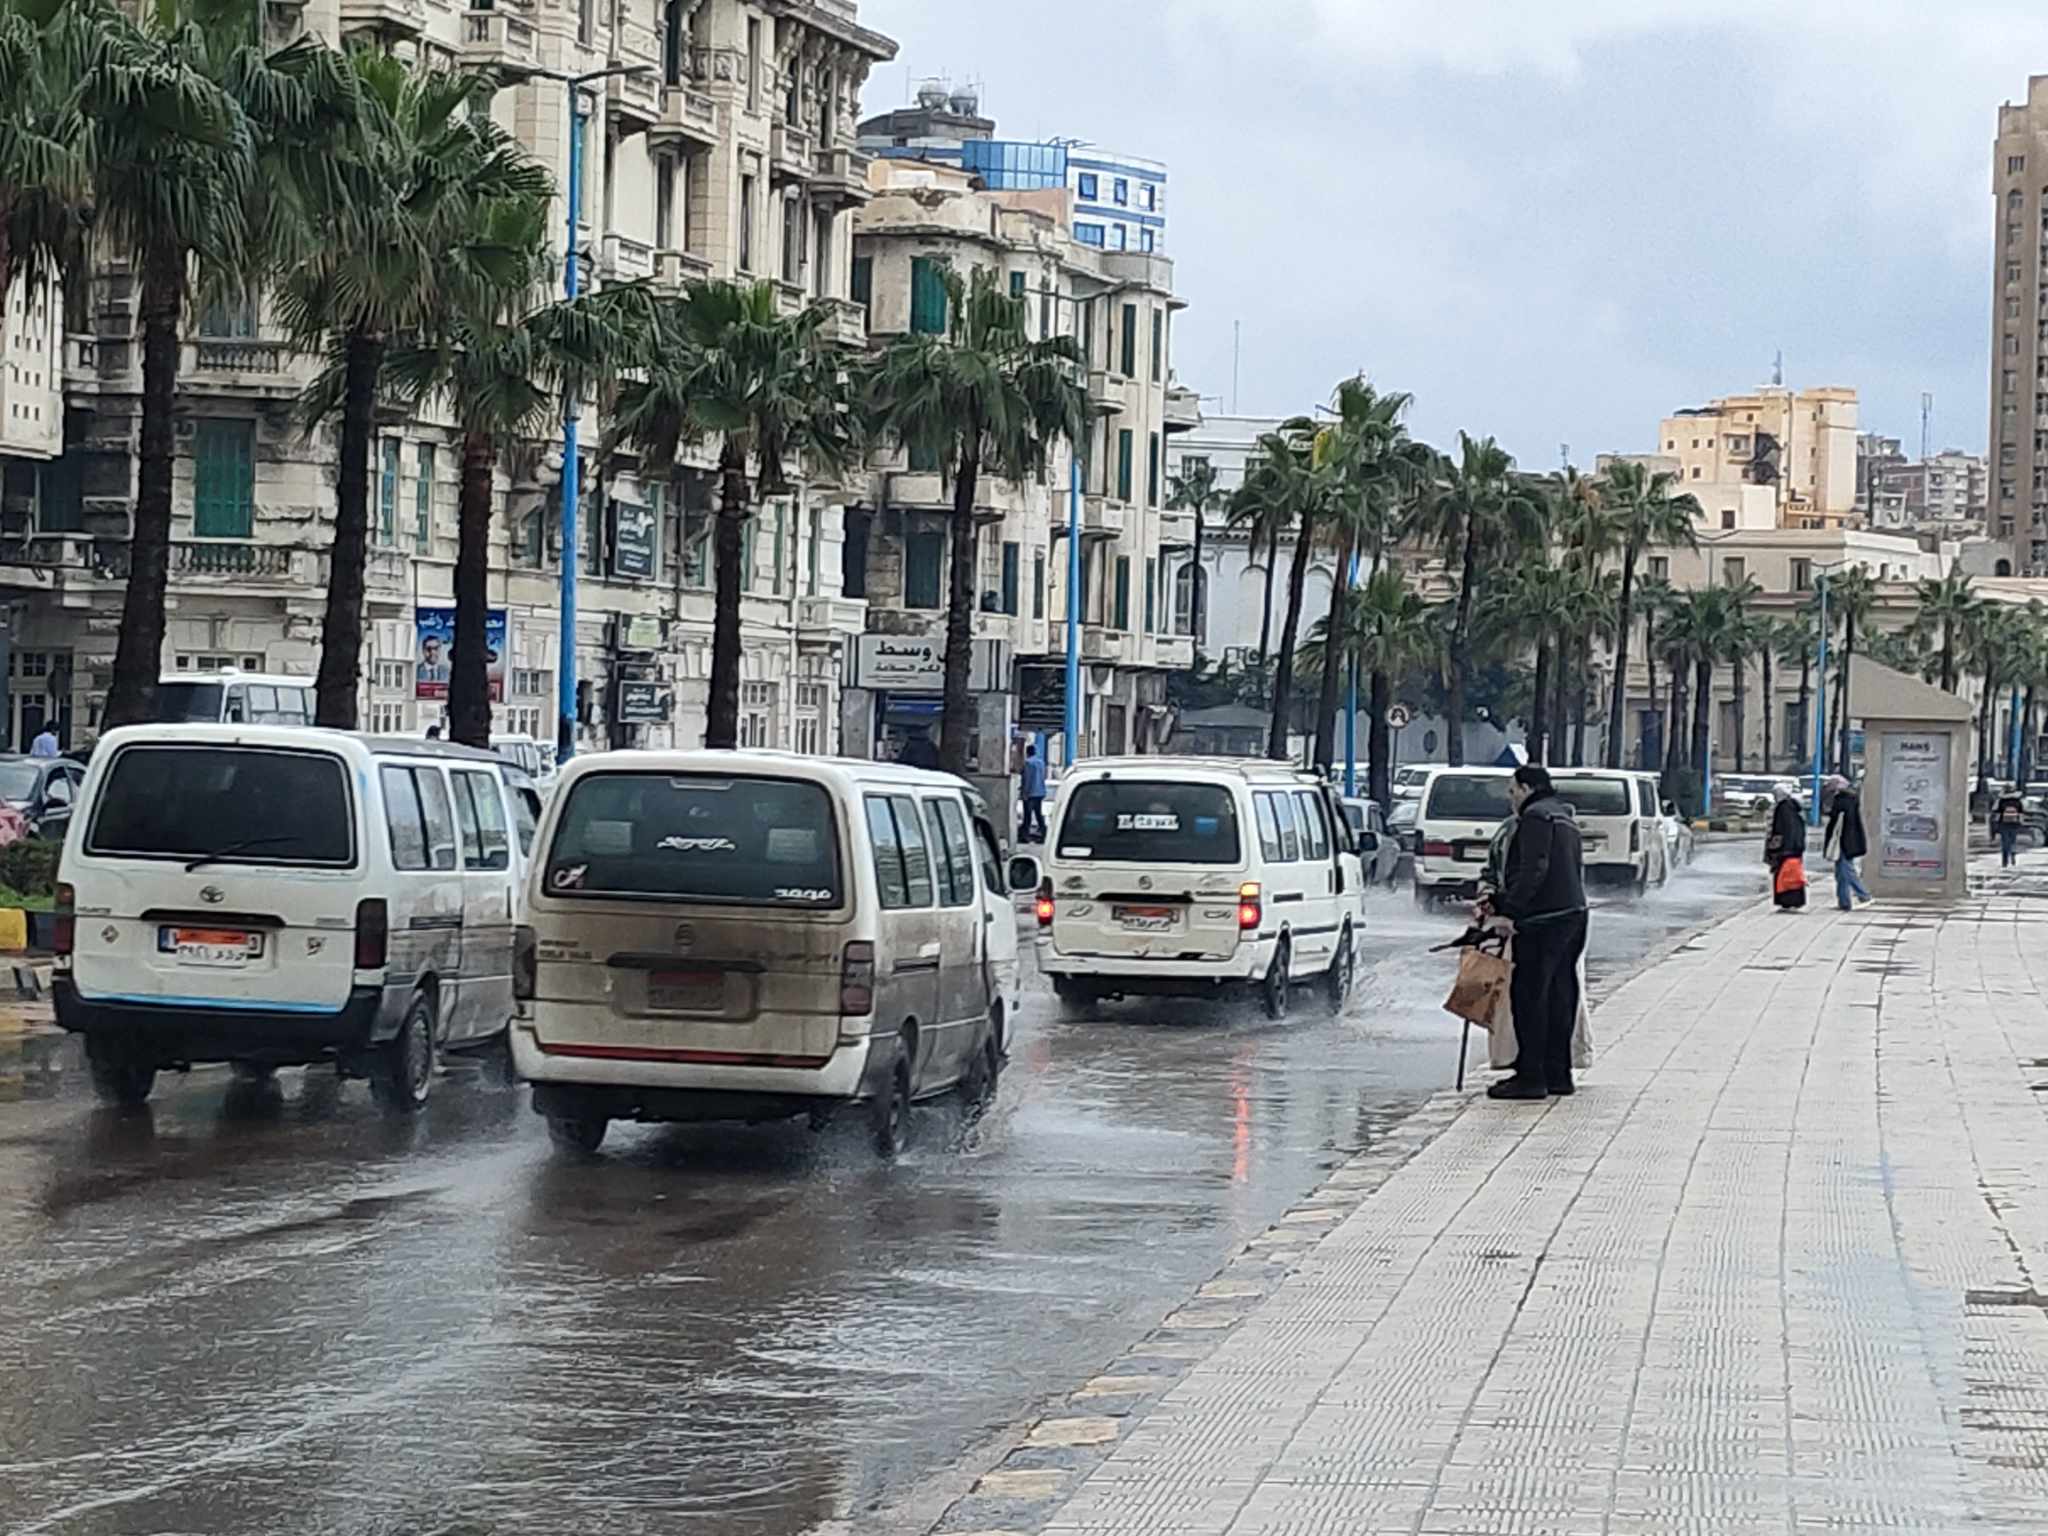 امطار غزيرة وطقس متقلب  في الإسكندرية اليوم